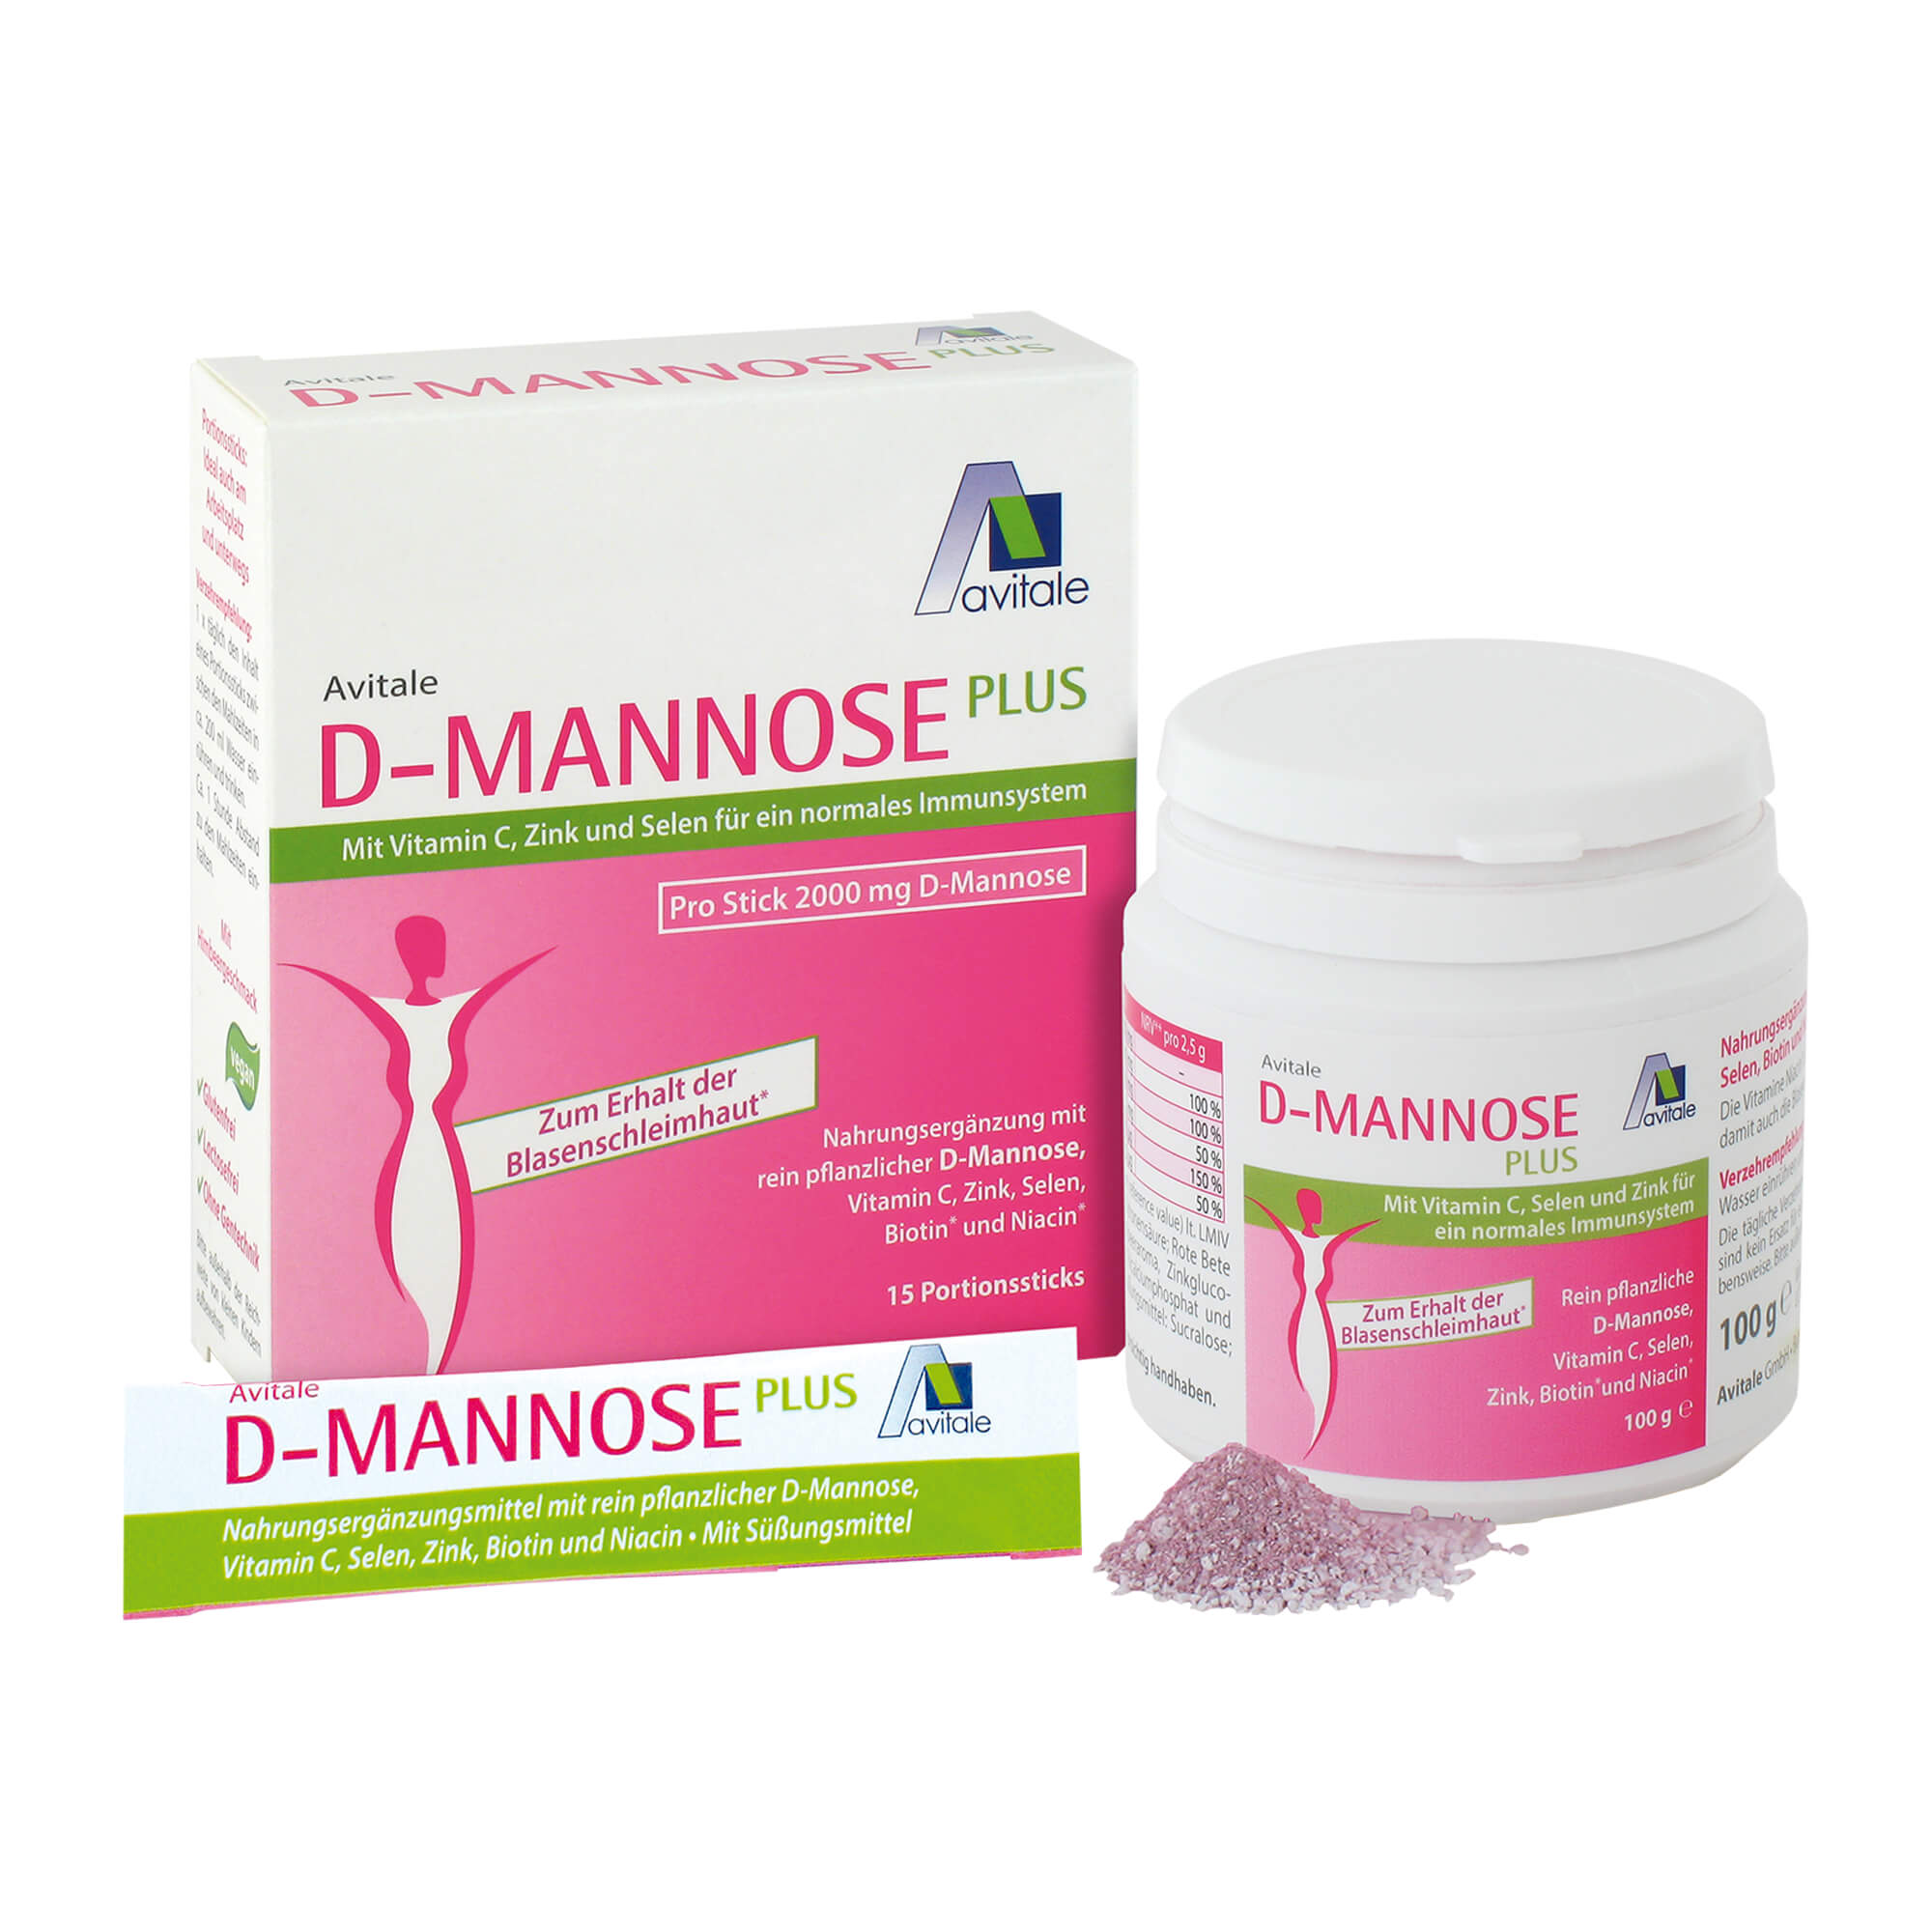 Nahrungsergänzungsmittel zur Förderung der Blasenschleimhaut. Sparset bestehend aus D-MANNOSE Plus Stick & Pulver.